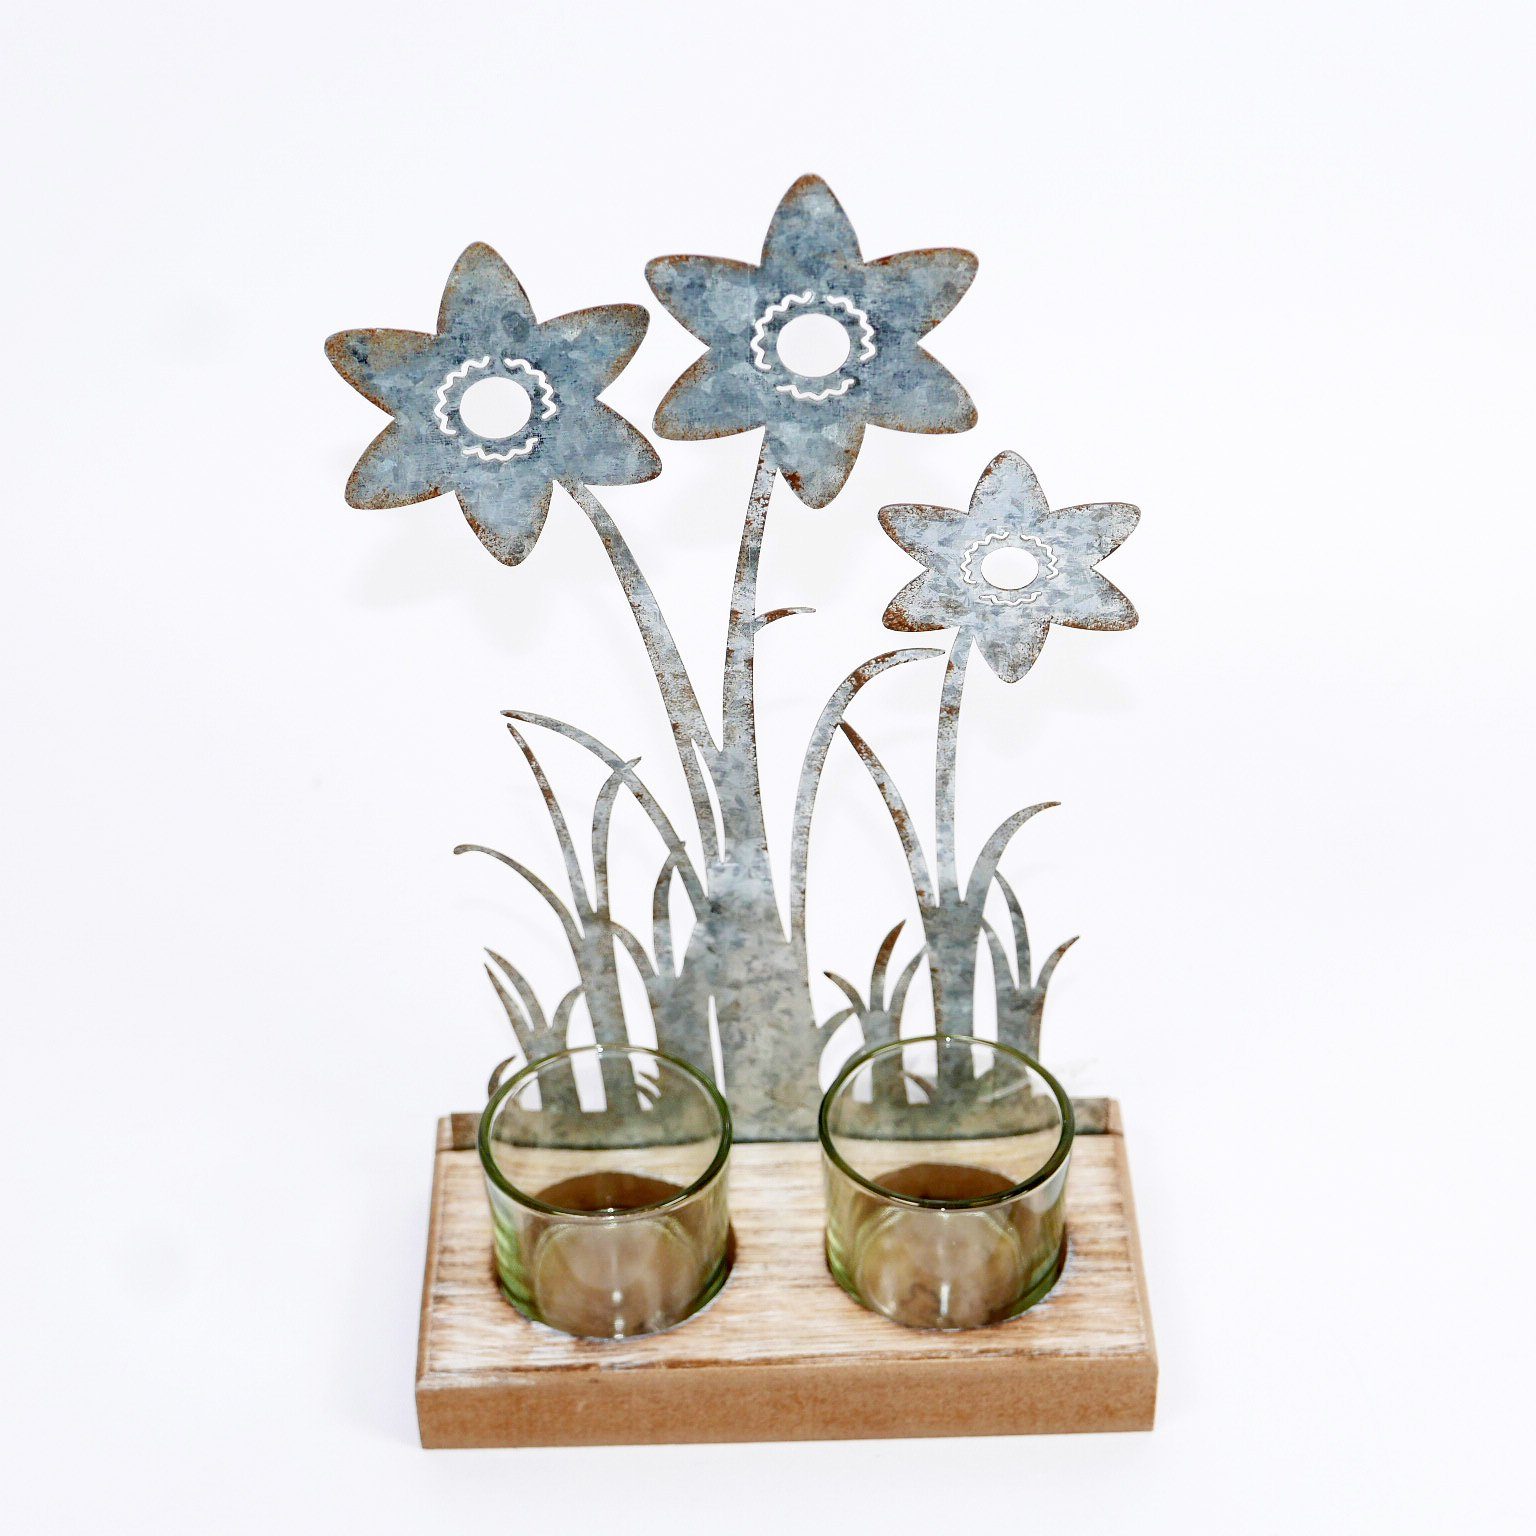 B&S Teelichthalter Teelichtglas 2er Metall aus auf - 23 cm Holzsockel H Blumenverzierung